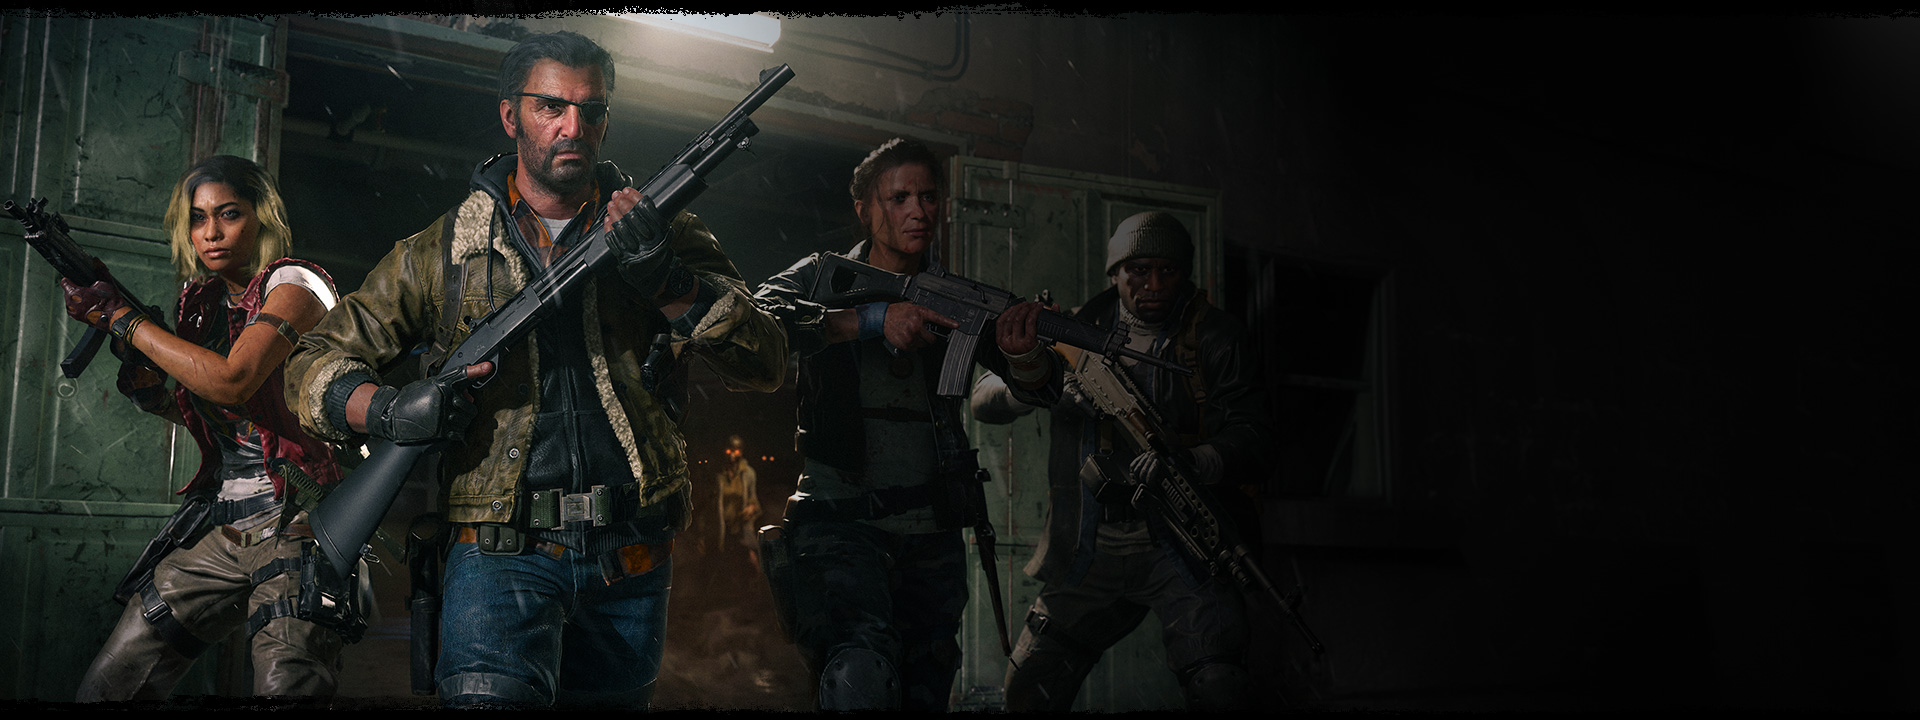 Quattro personaggi che escono da un magazzino con le pistole alzate e uno zombie con occhi arancioni luminosi alle spalle.